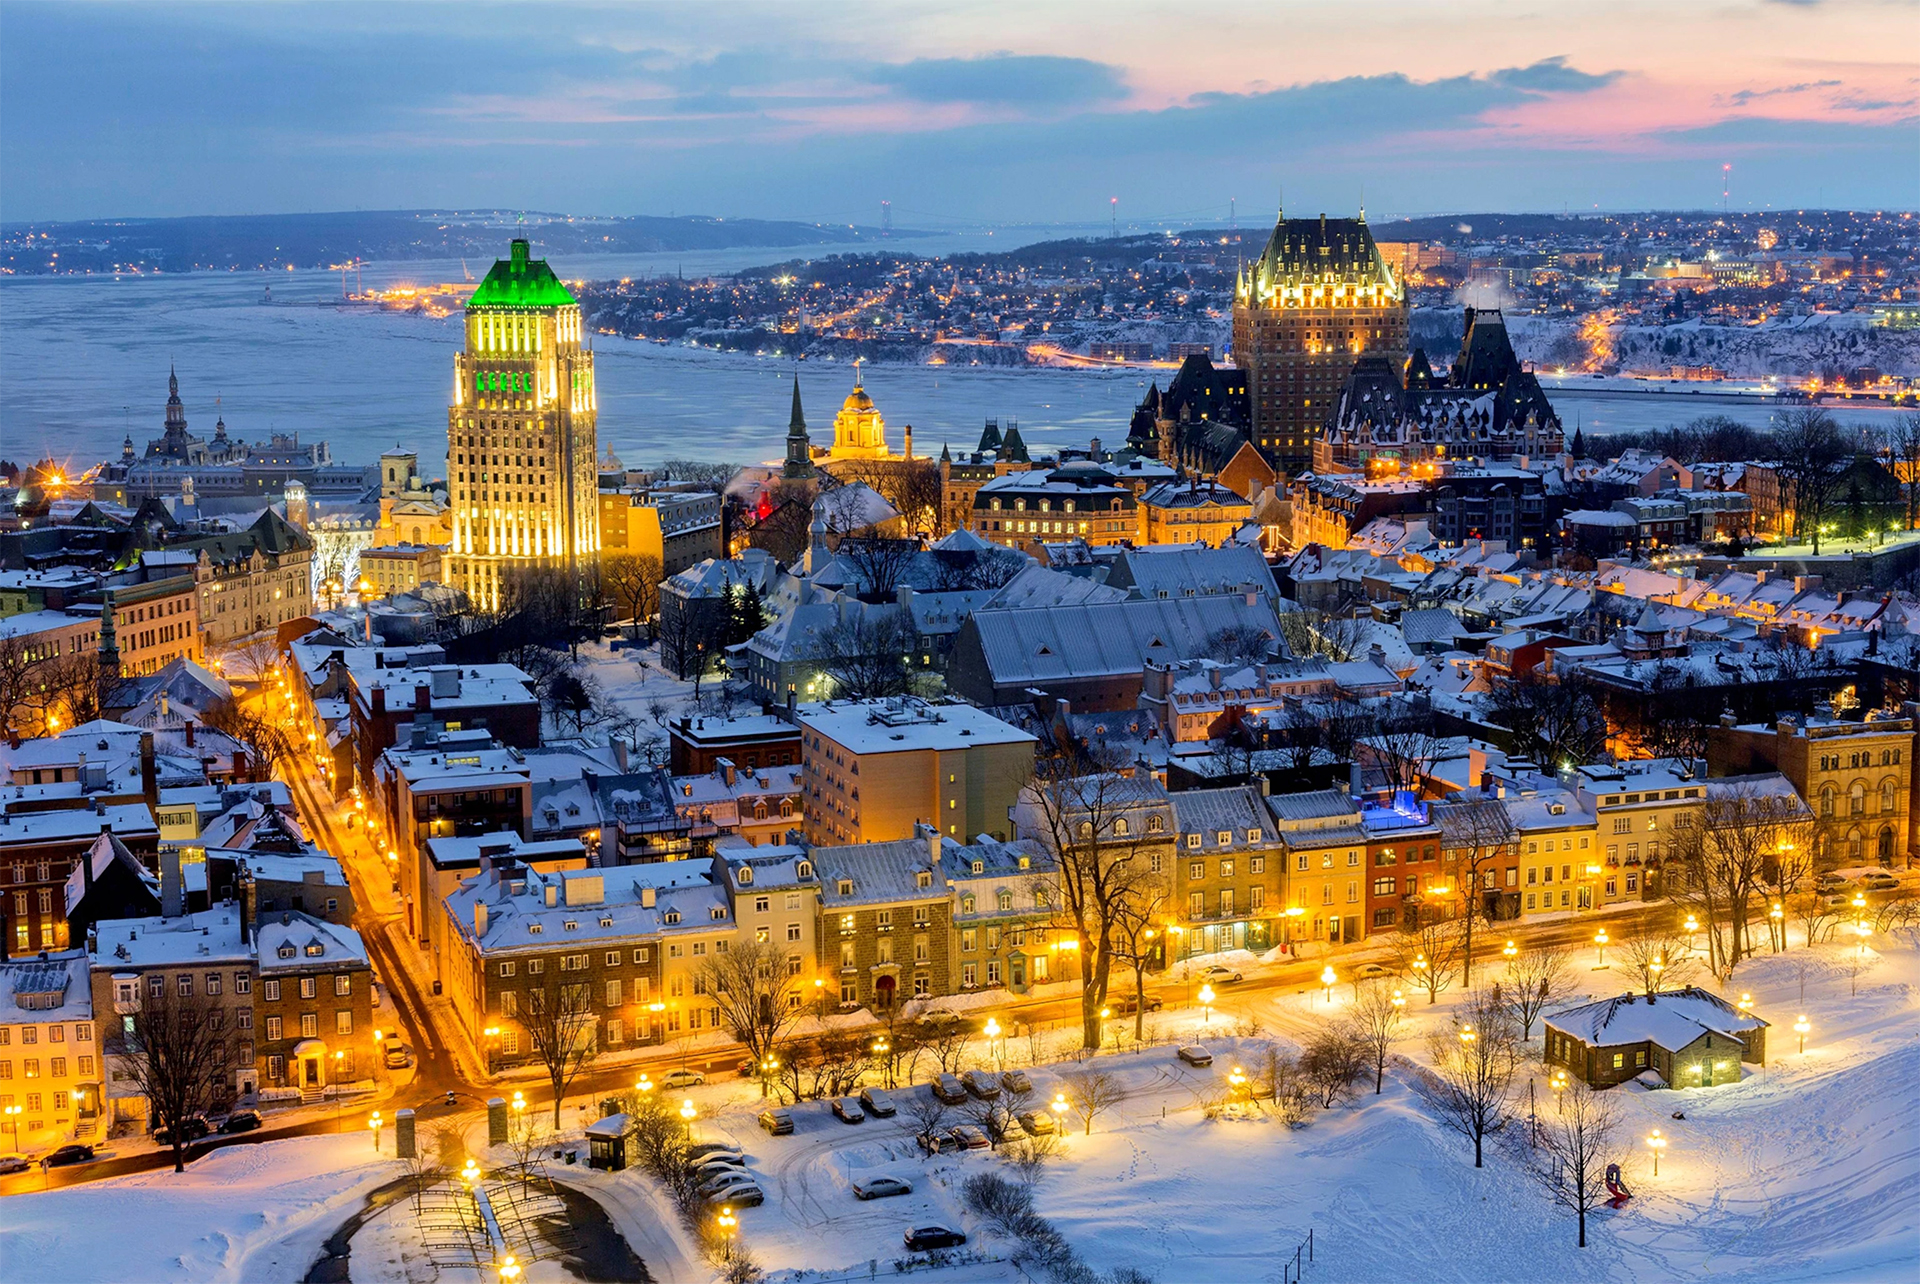 Canada Quebec